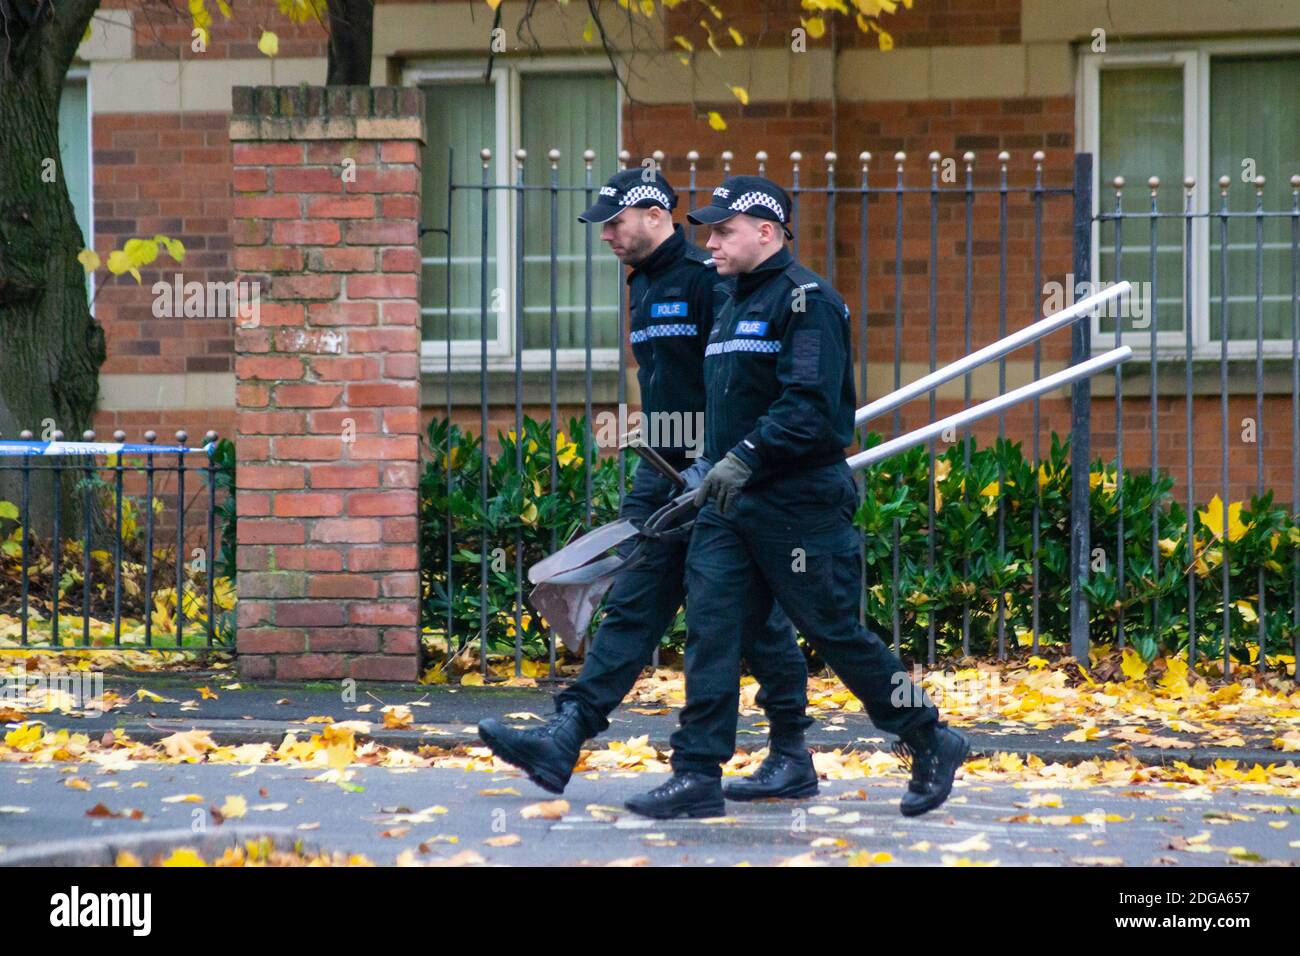 Am 24. Oktober 2020 hörten Anwohner Schüsse auf einer Straße in Winson Green, Birmingham. Die Polizei sperrte die Straße für etwa 12 Stunden ab, während Ermittlungen und Untersuchungen mit Fingerspitzen von spezialisierten Einsatzeinheiten der West Midlands Police durchgeführt wurden Stockfoto